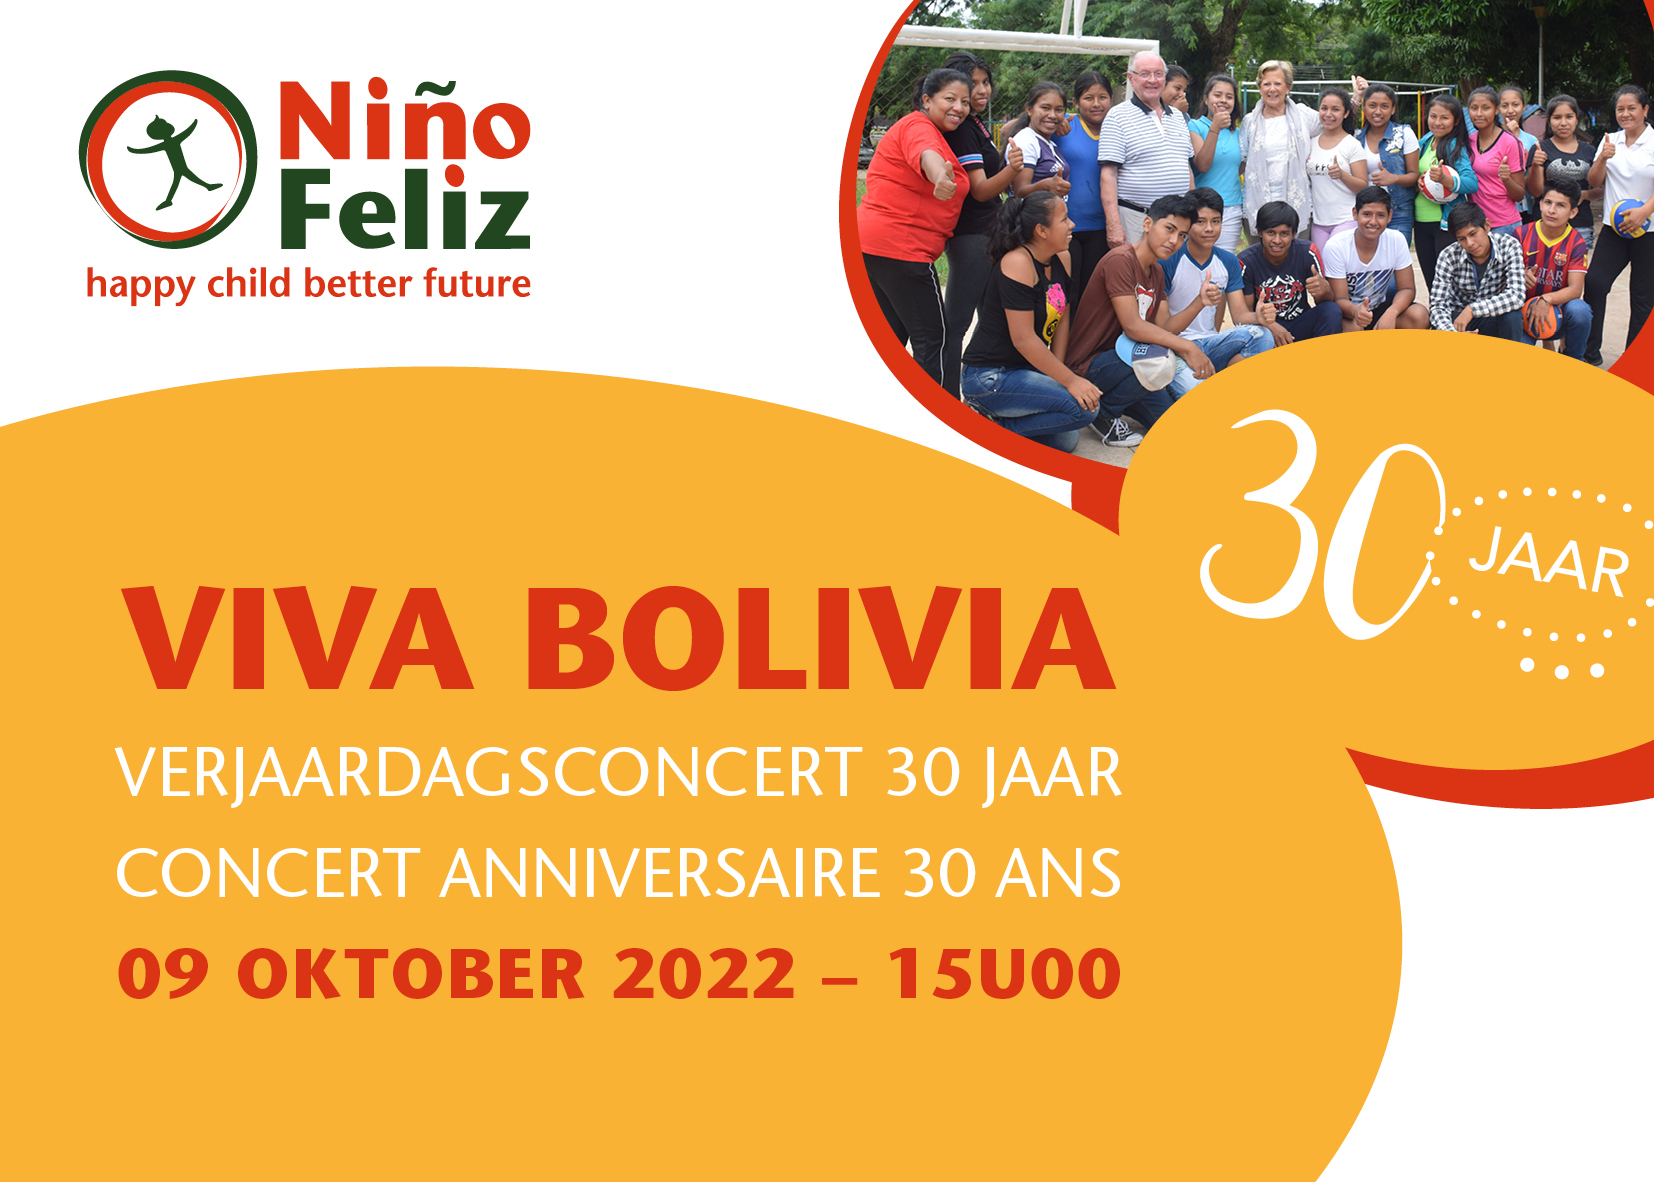 Viva Bolivia op 9 oktober met Fiorettikoor en Ingeborg. Viert u mee?